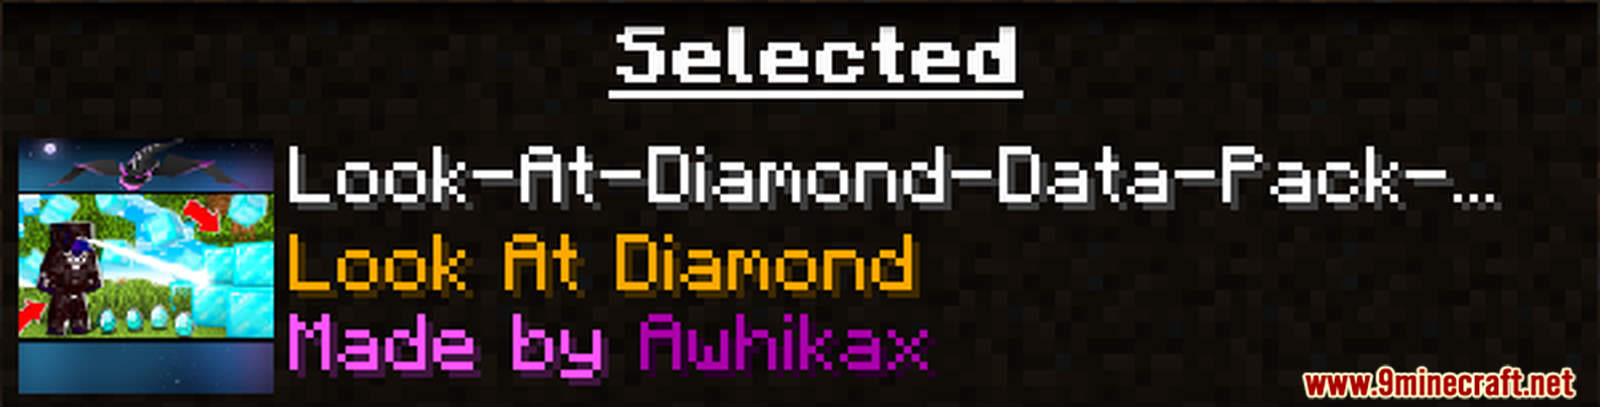 Look At Diamond Data Pack (1.17.1, 1.16.5) - Infinite Diamonds! 2